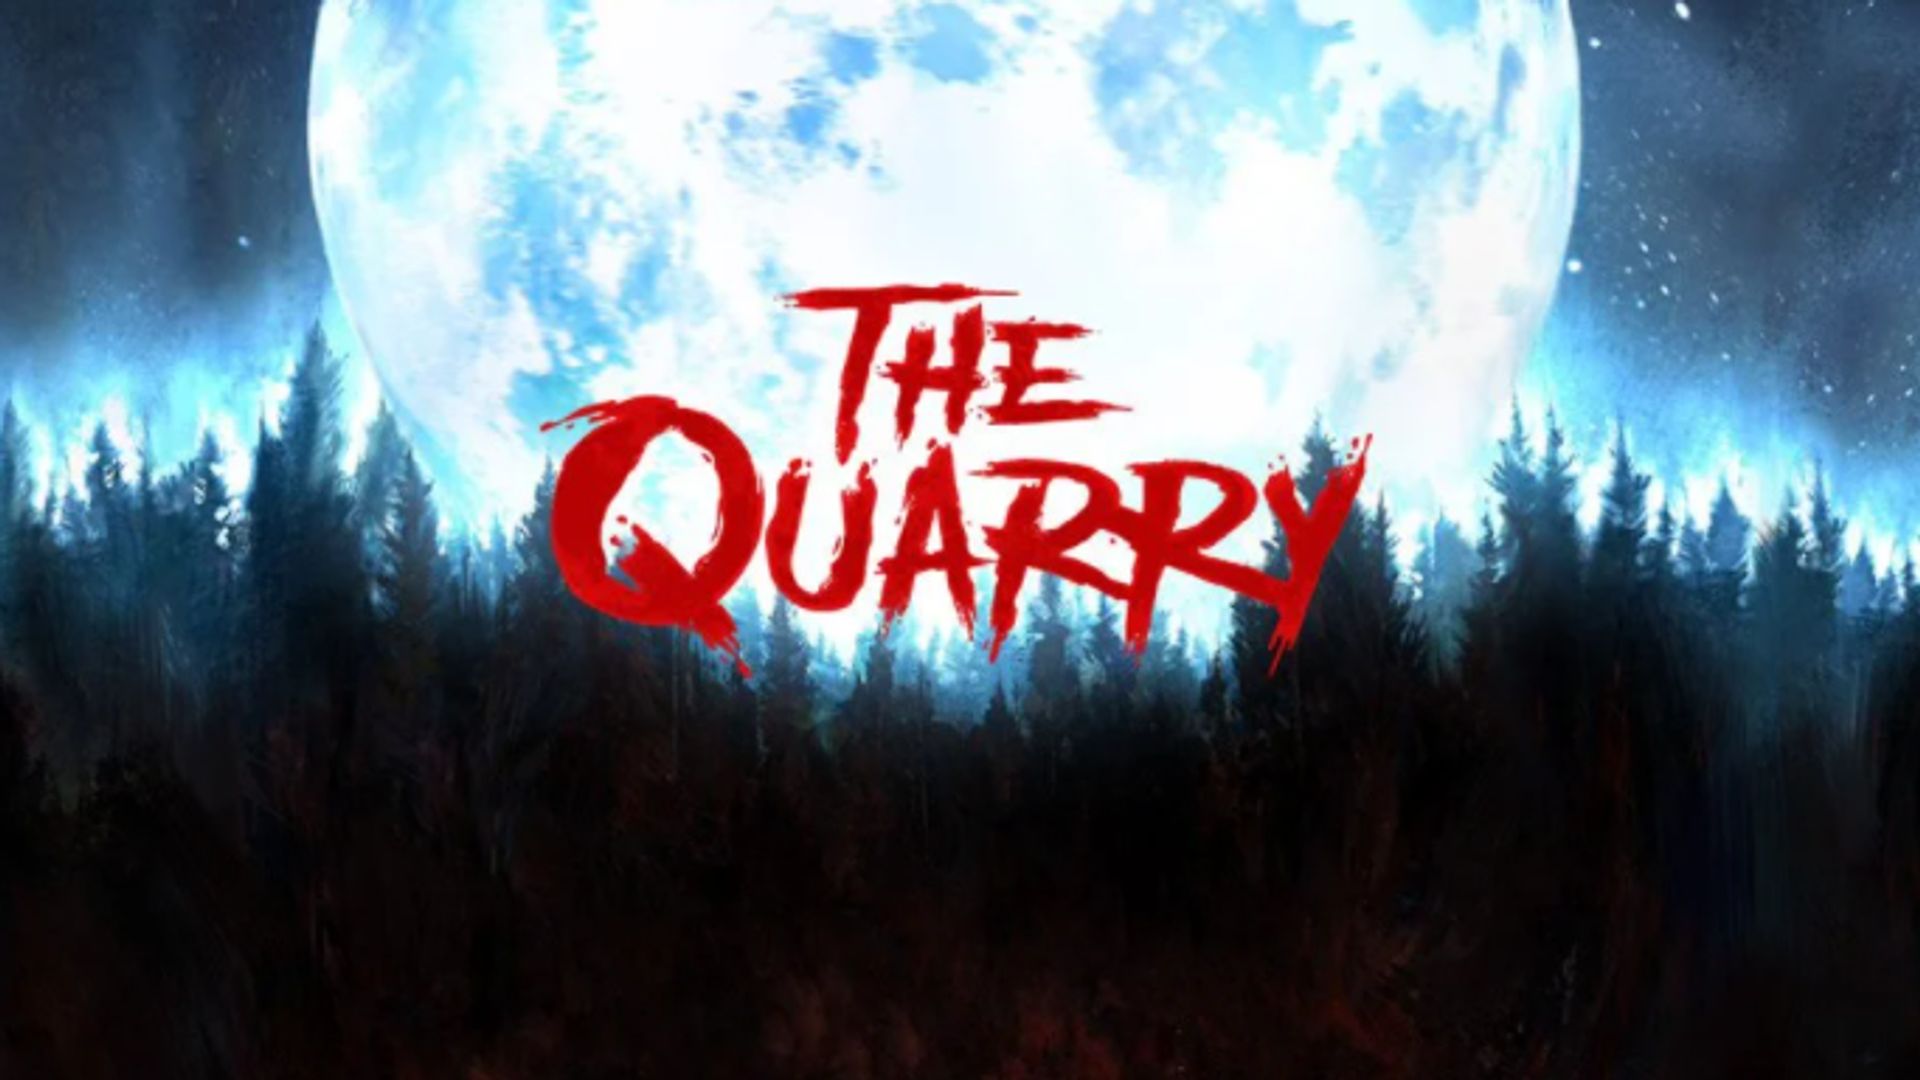 The Quarry was eerst een Stadia-exclusive